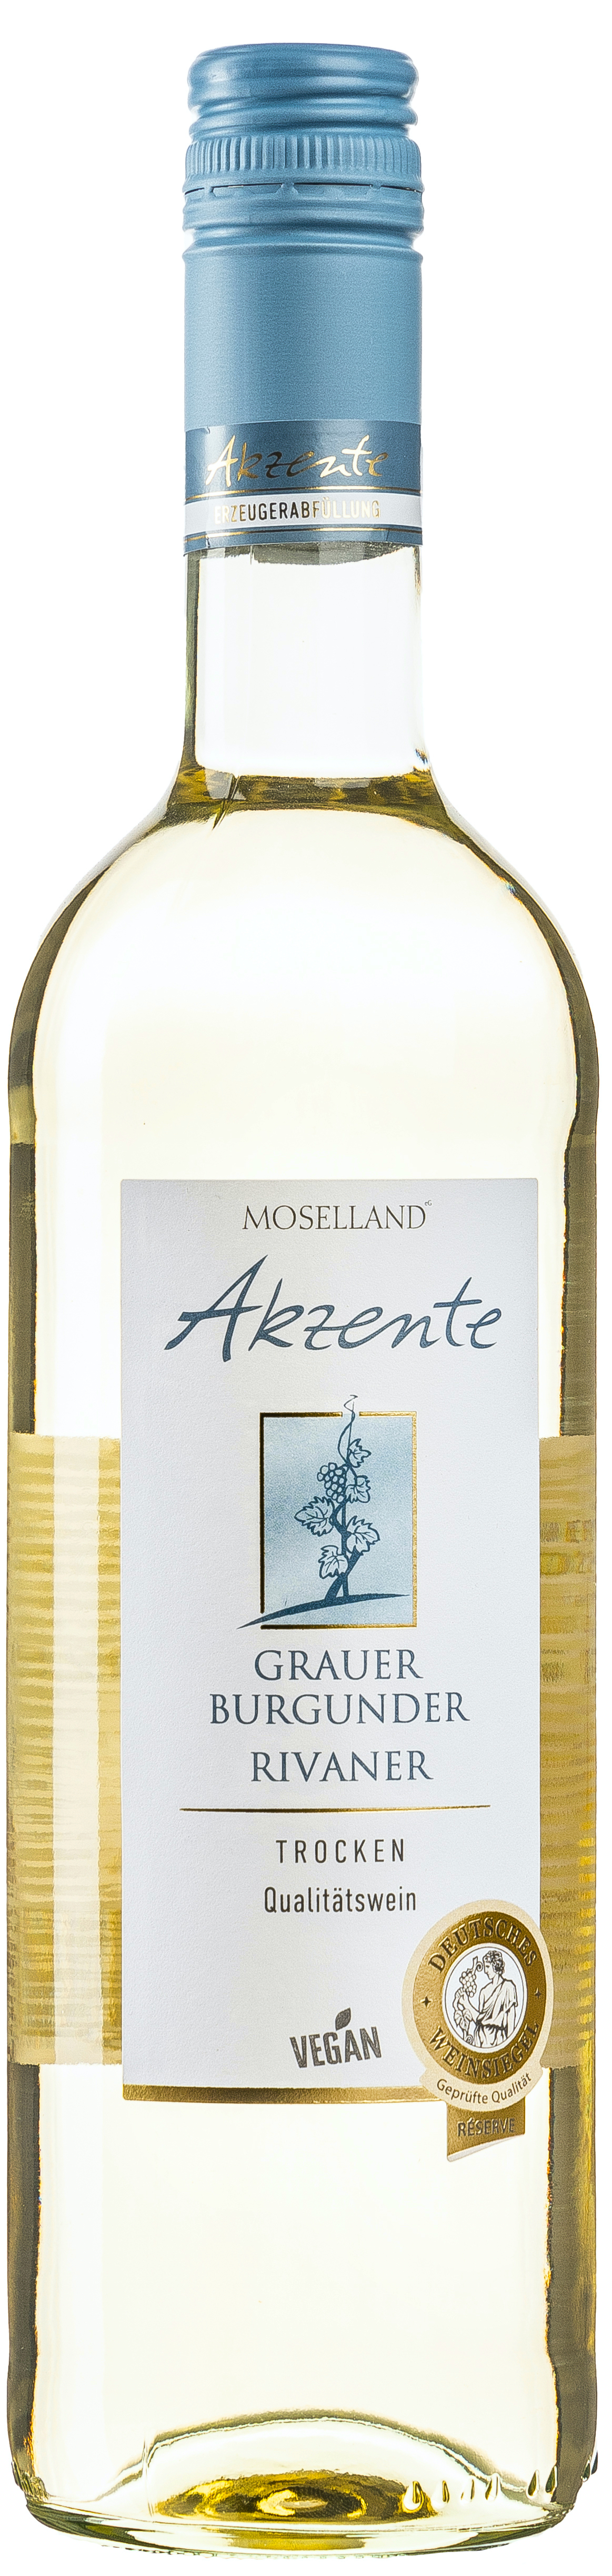 Moselland Akzente Grauer Burgunder & Rivaner trocken 12,5% vol. 0,75L